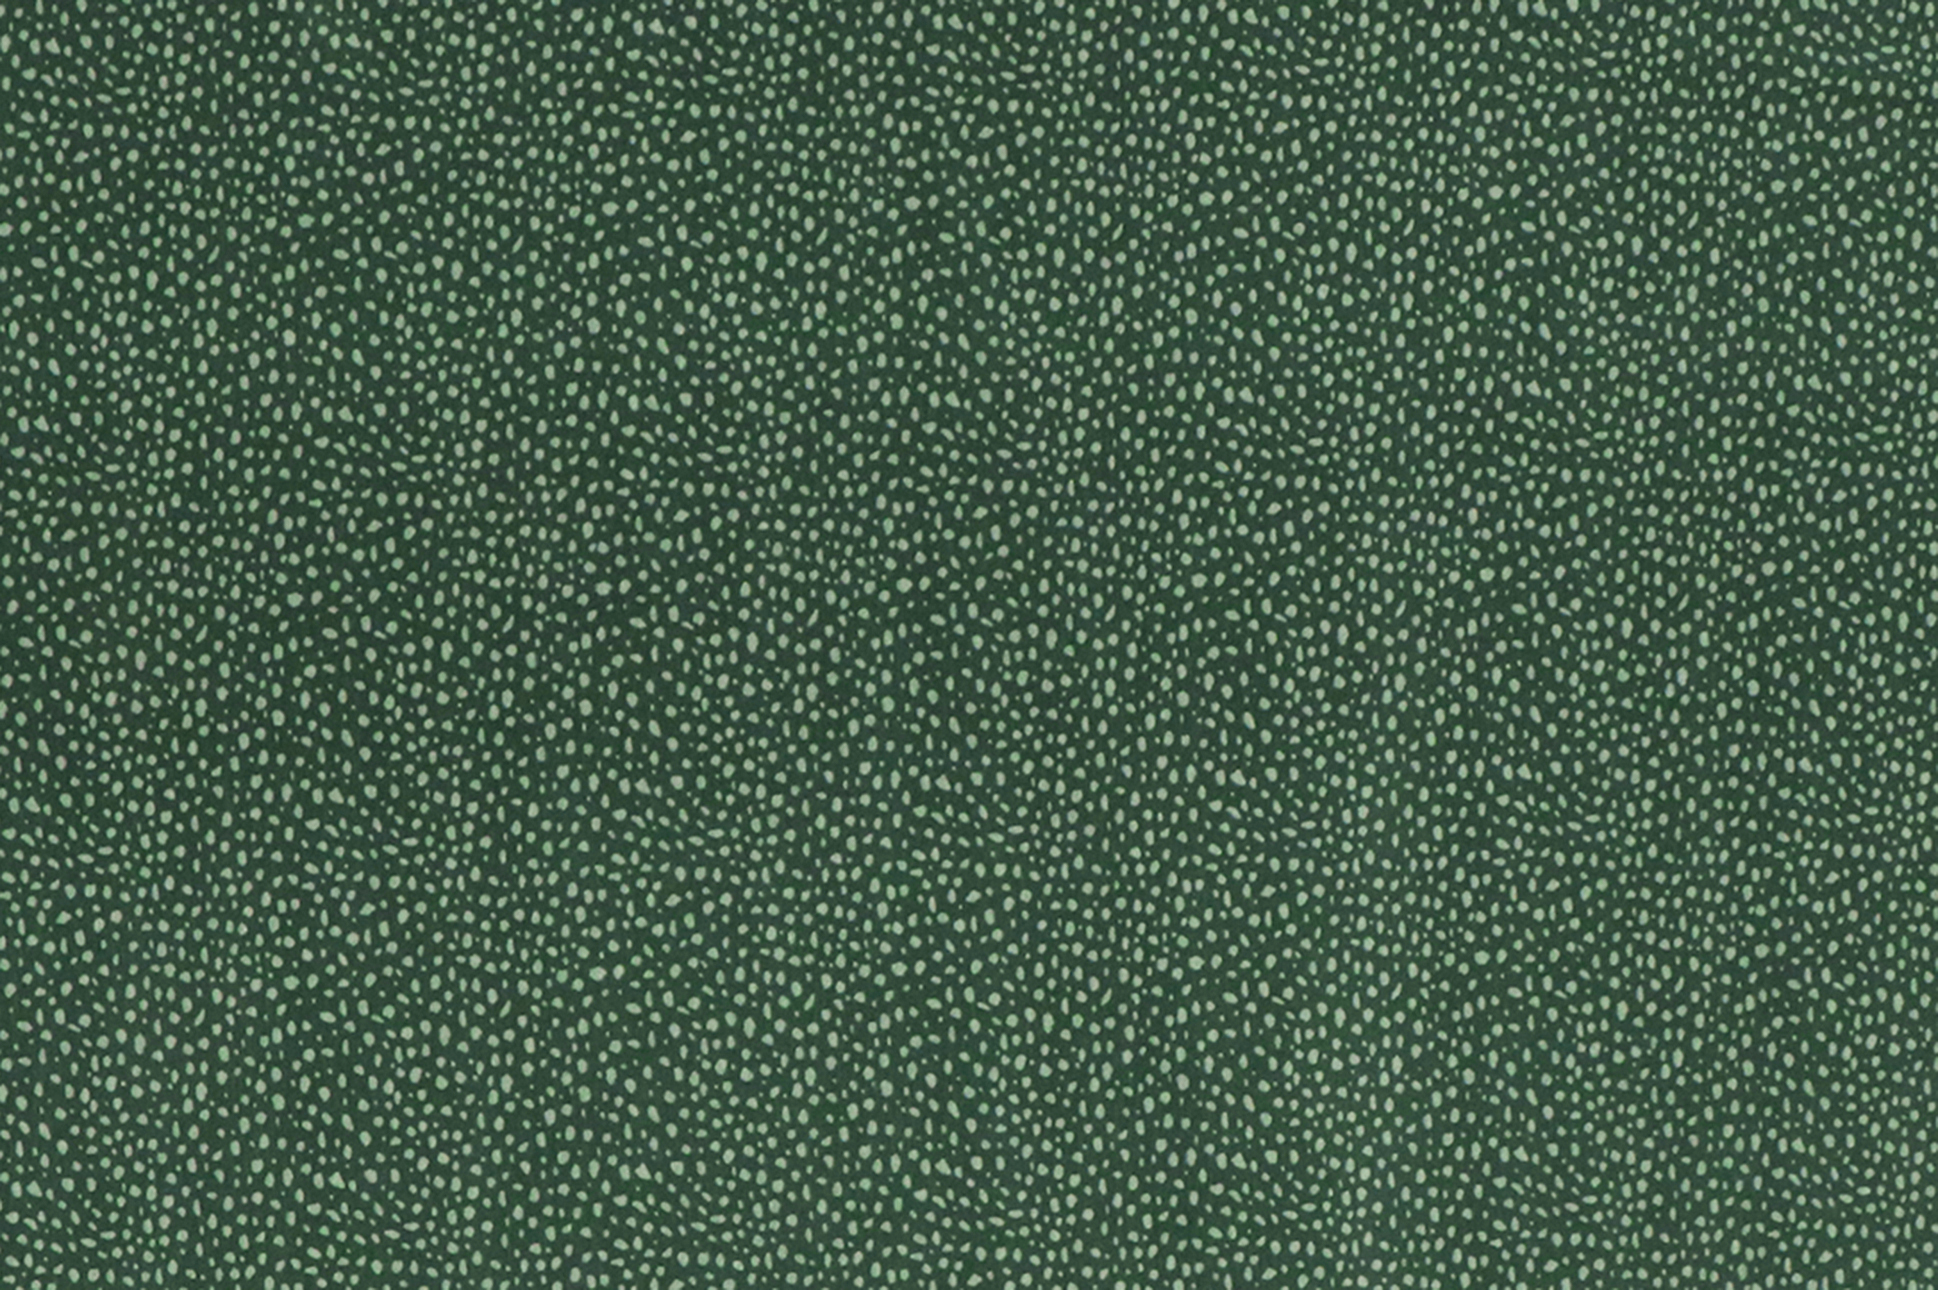 Baumwolljersey, helle Flecken auf grün